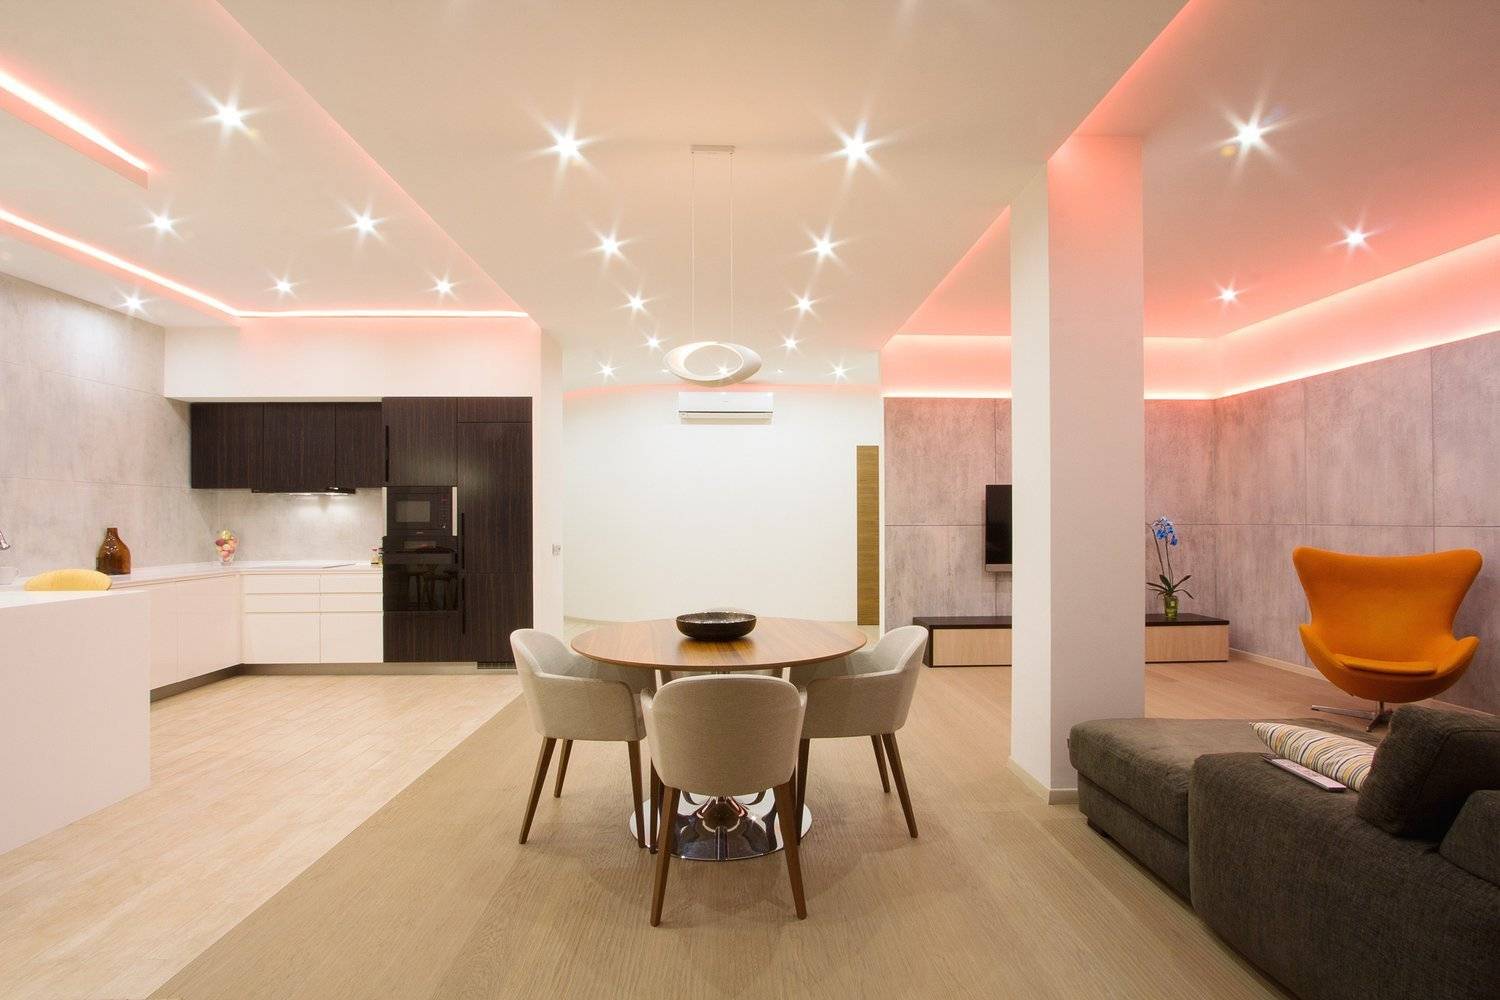 Особенности и схемы освещения в гостиной с натяжными потолками